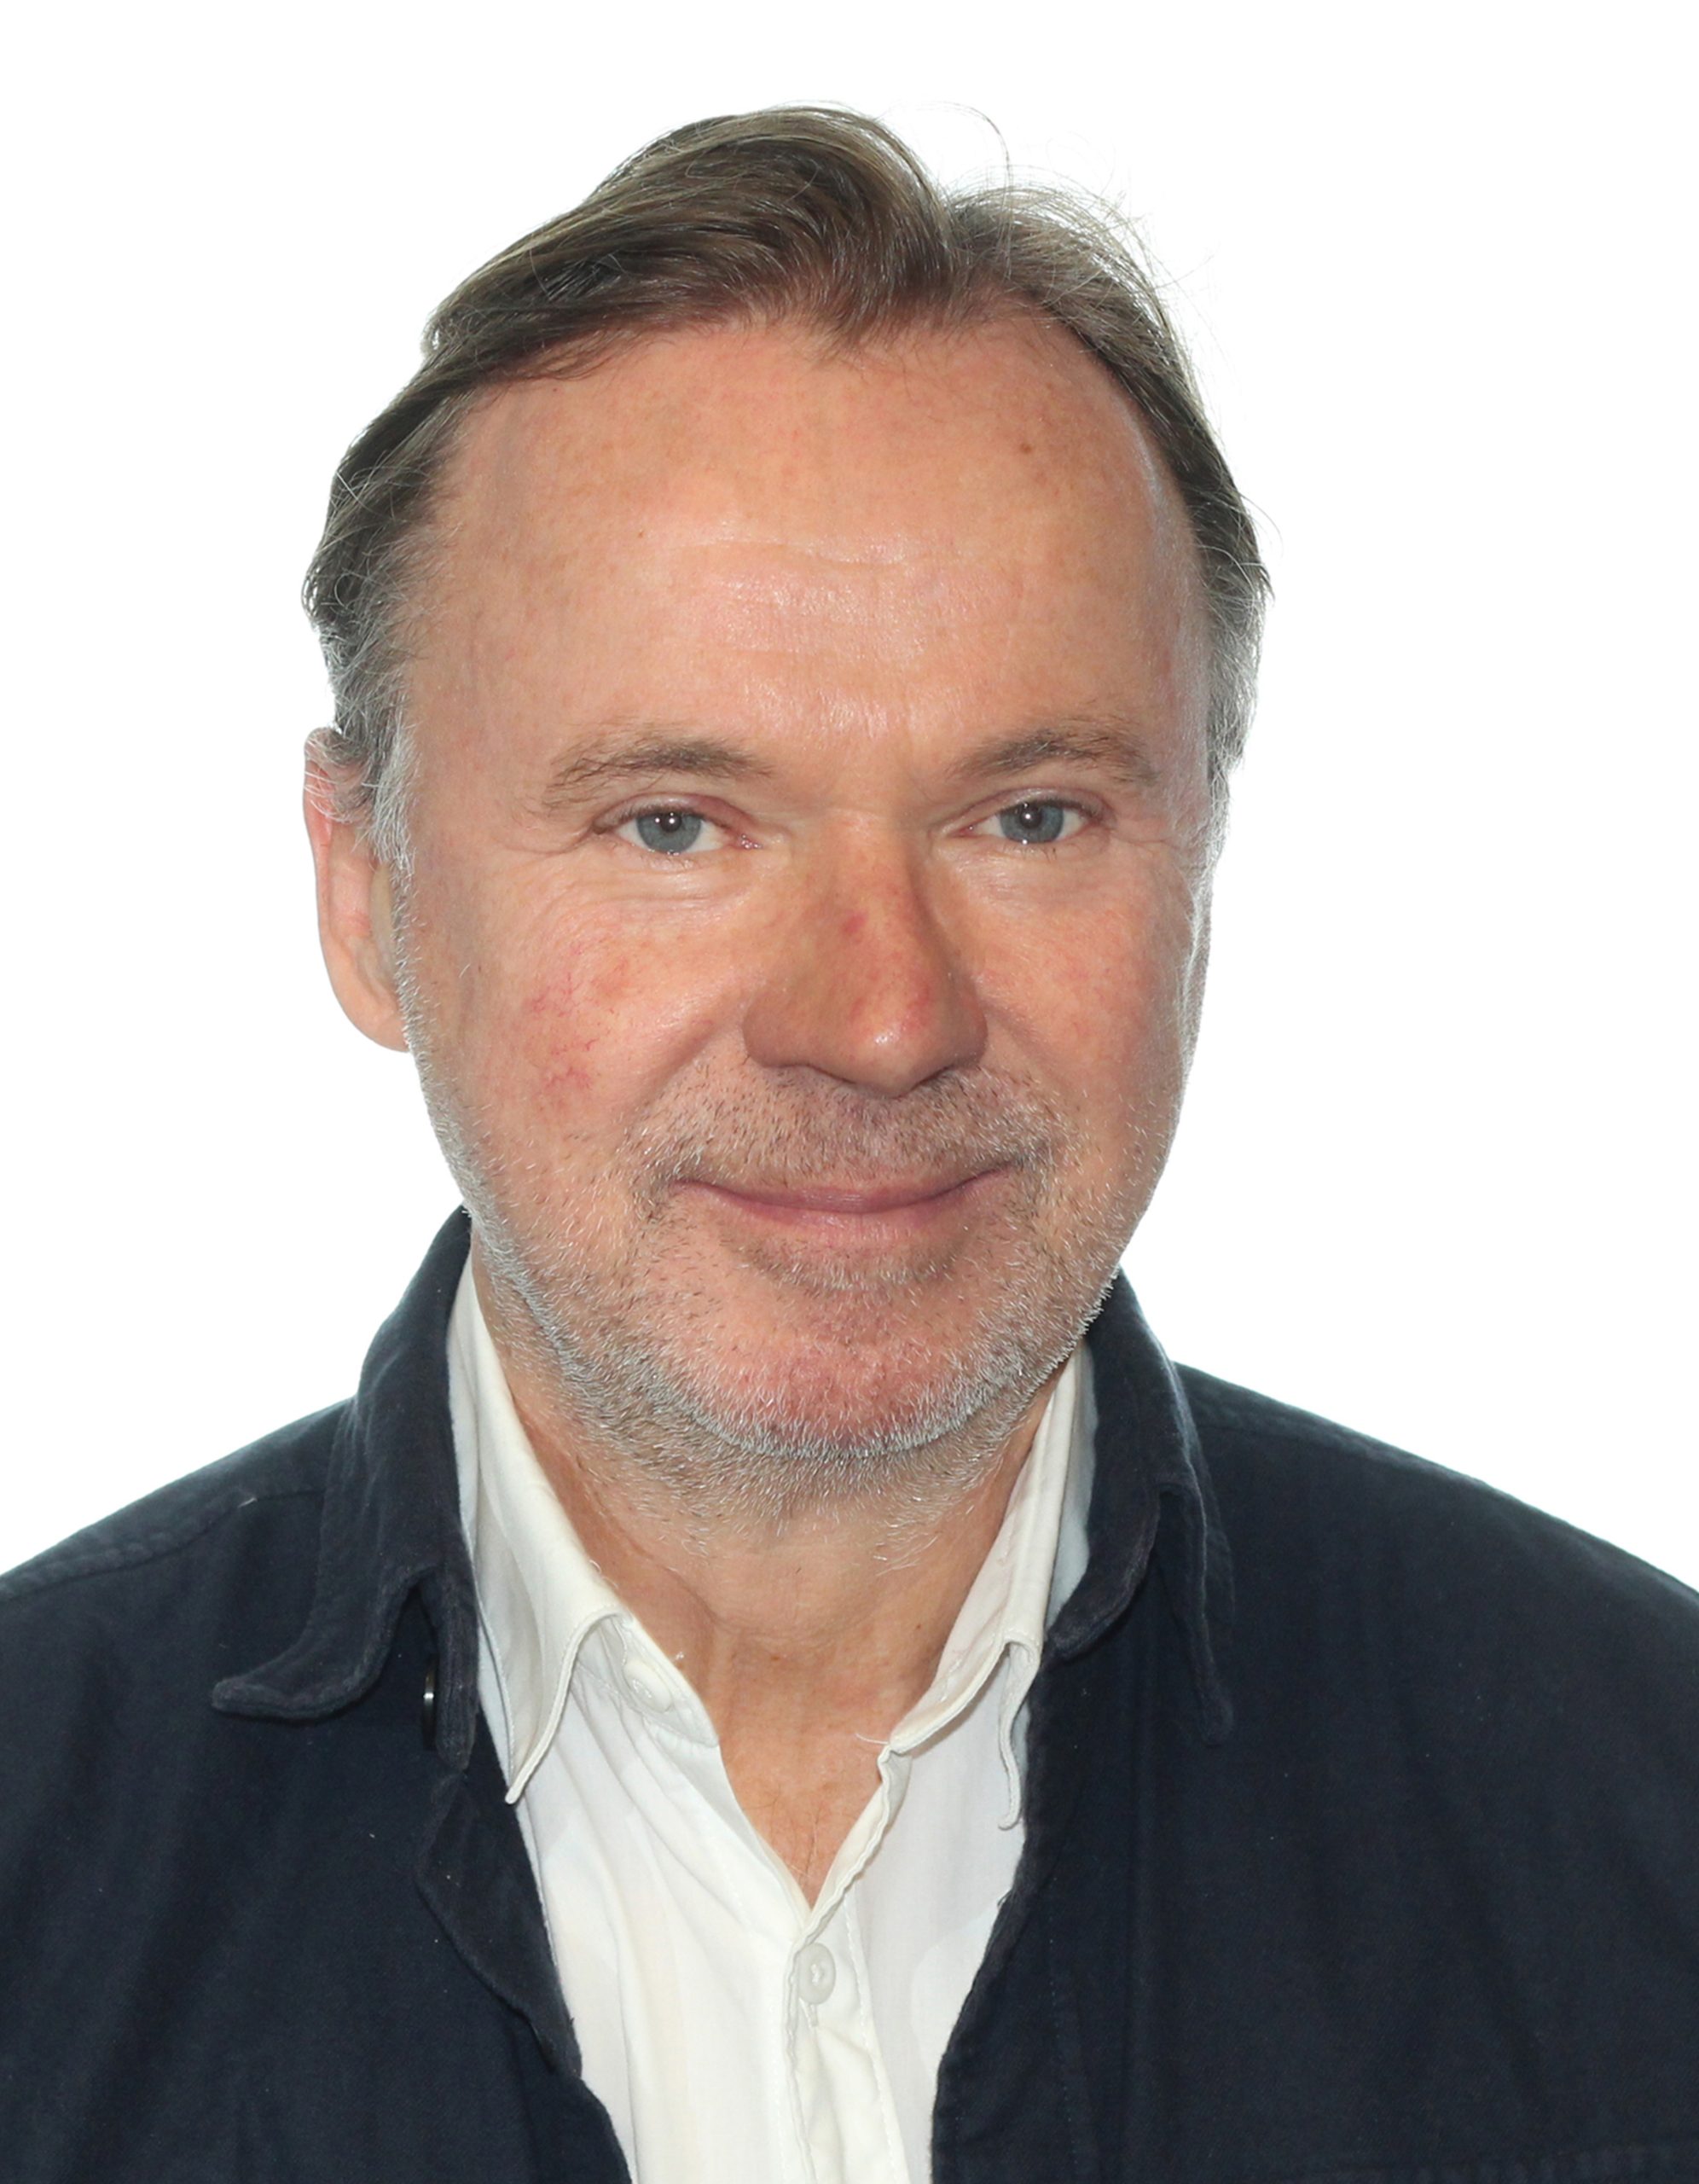 Johan Ahlsell